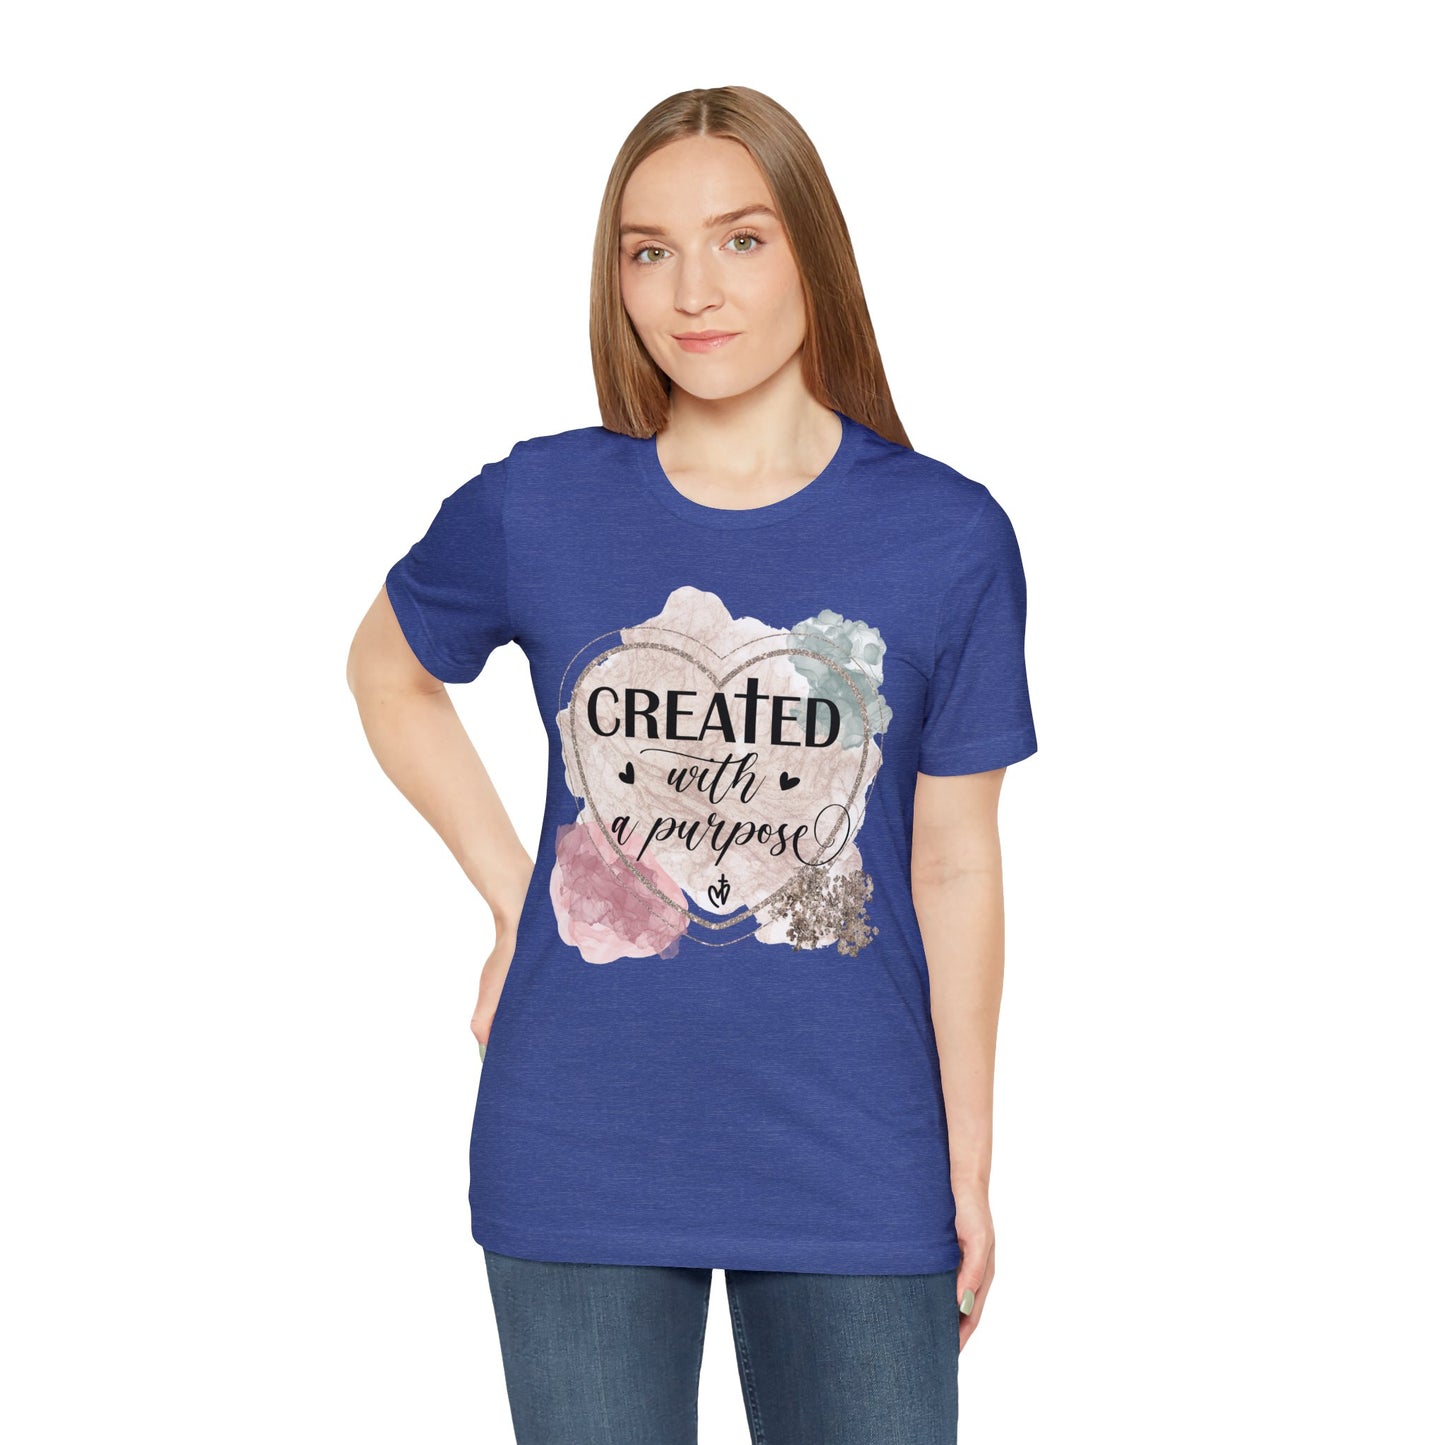 Created With Purpose Shirt, Faith T-Shirt, Religious Tee, Gift for Christian Friend (Faith-55)